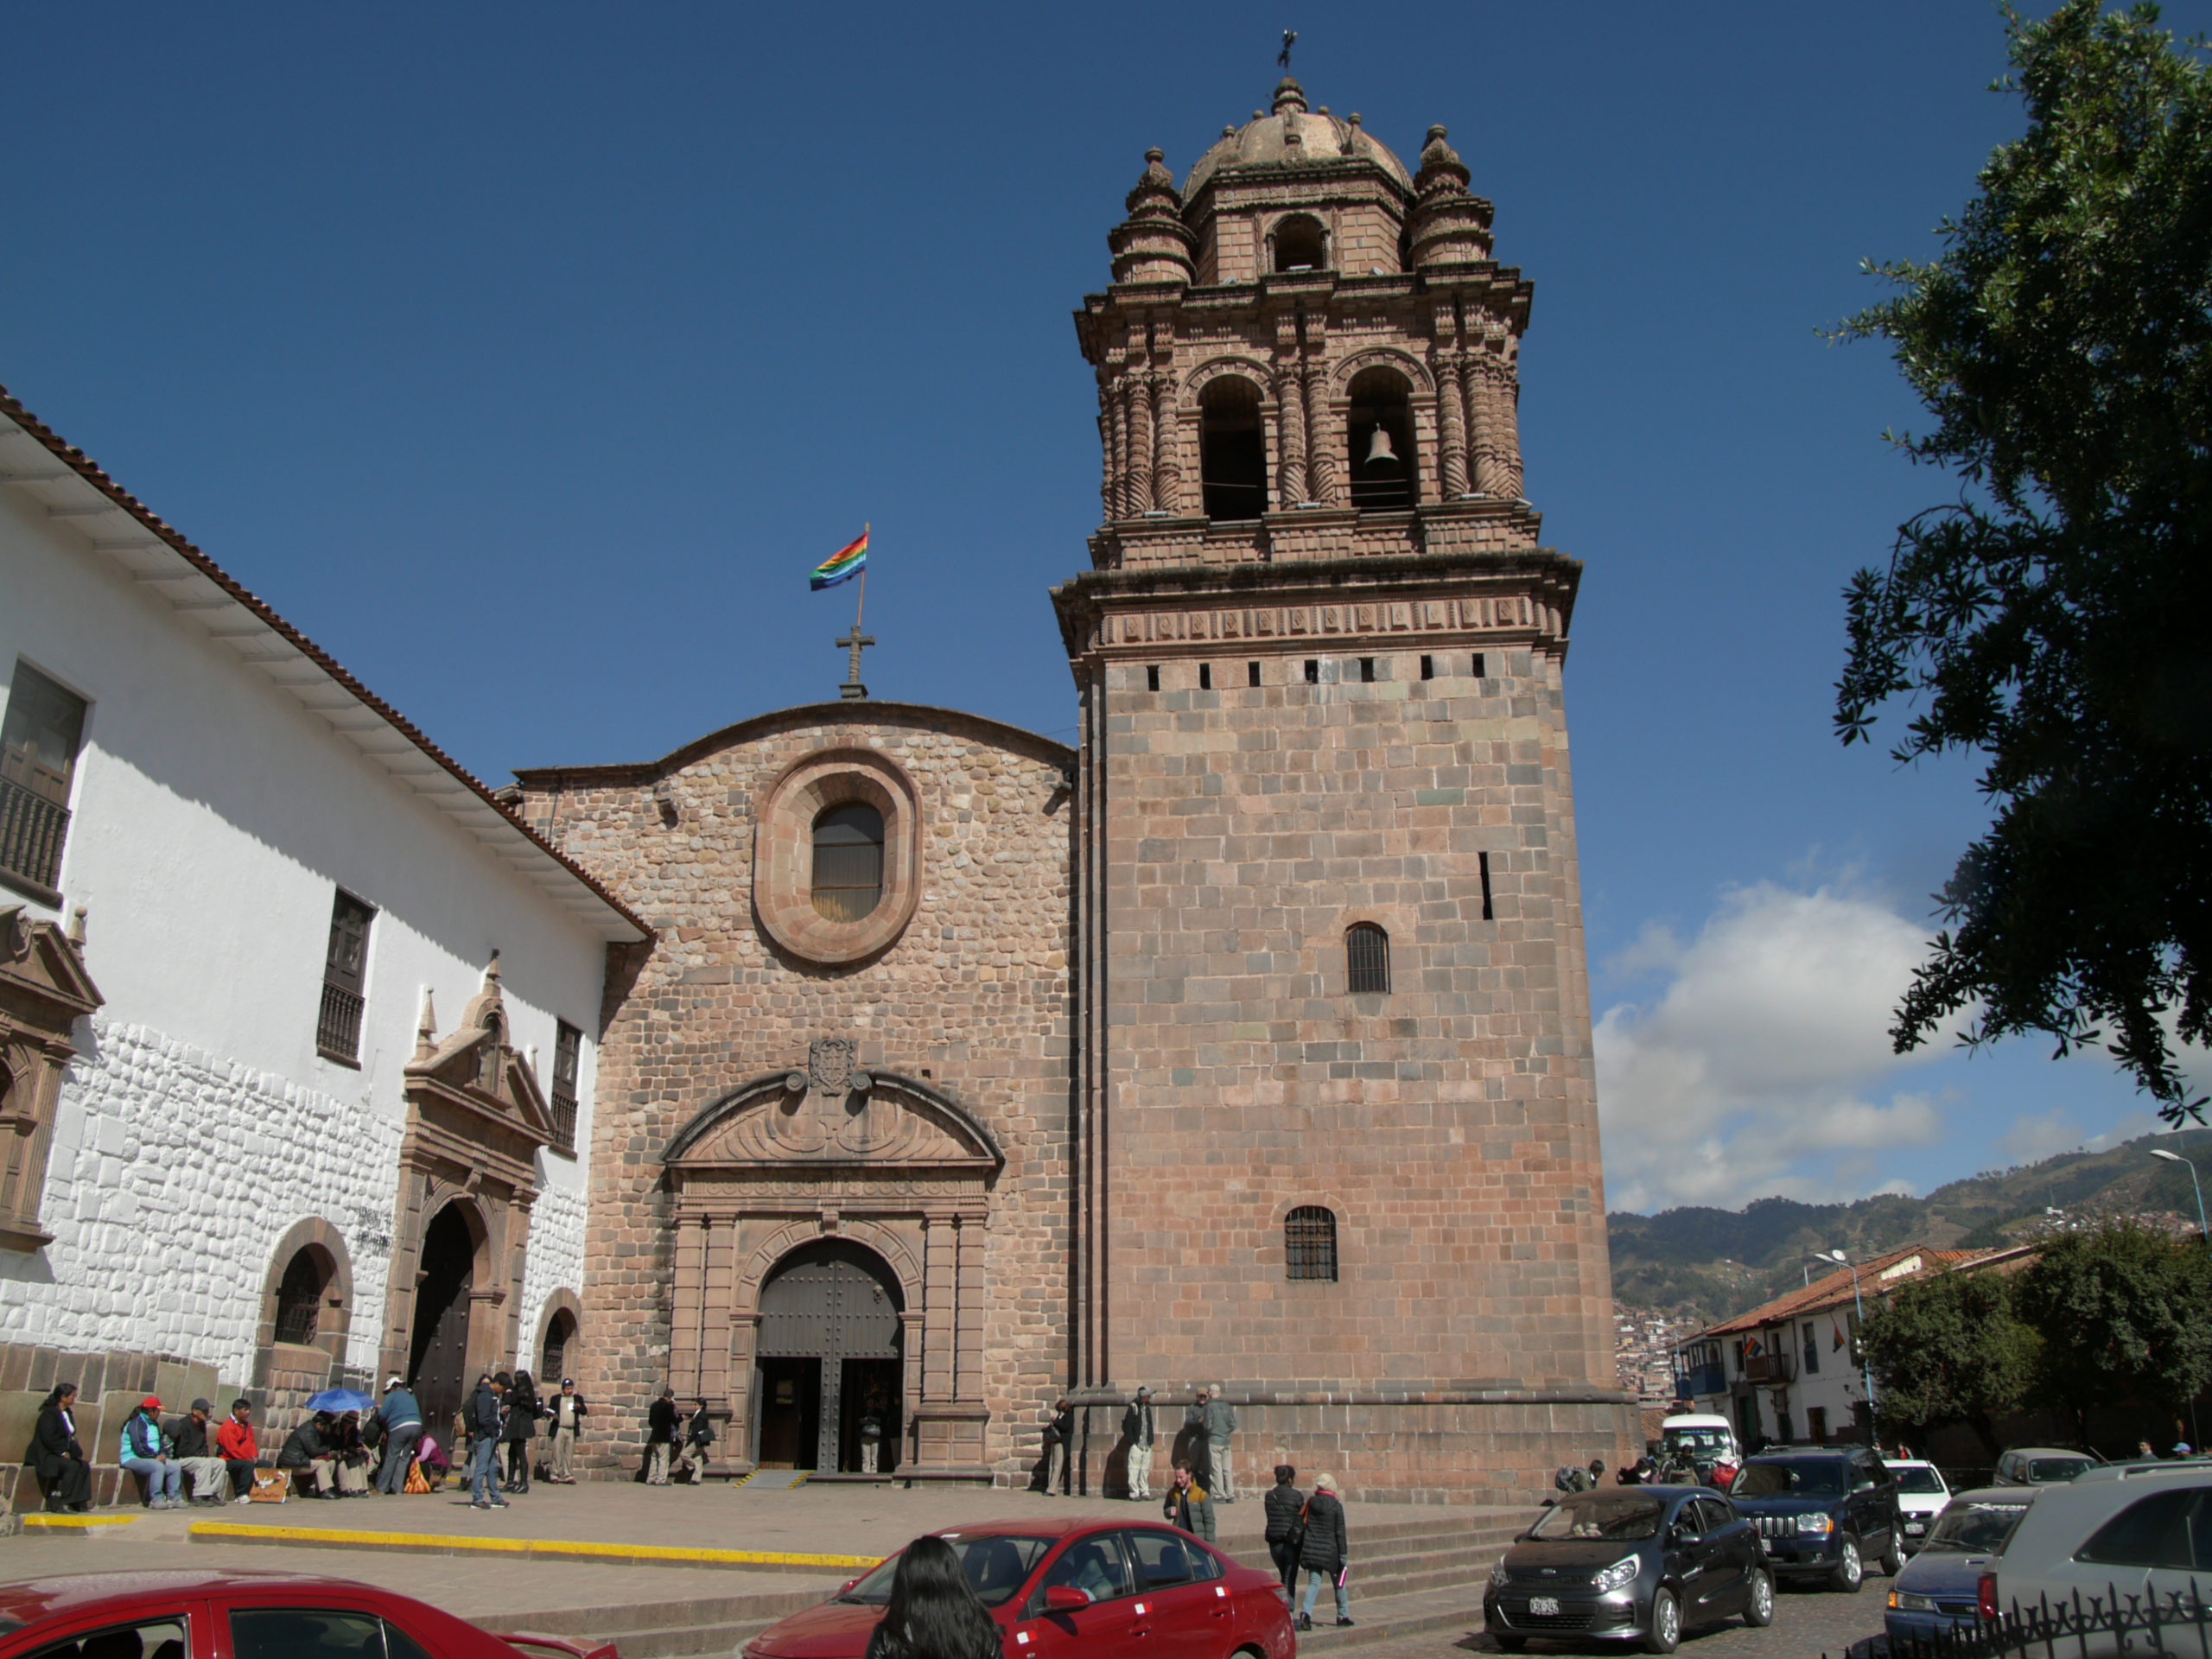 与太阳神殿相连的是Santo Domingo 大教堂，不远处还有兵器广场及其周围的四座教堂、西班牙长